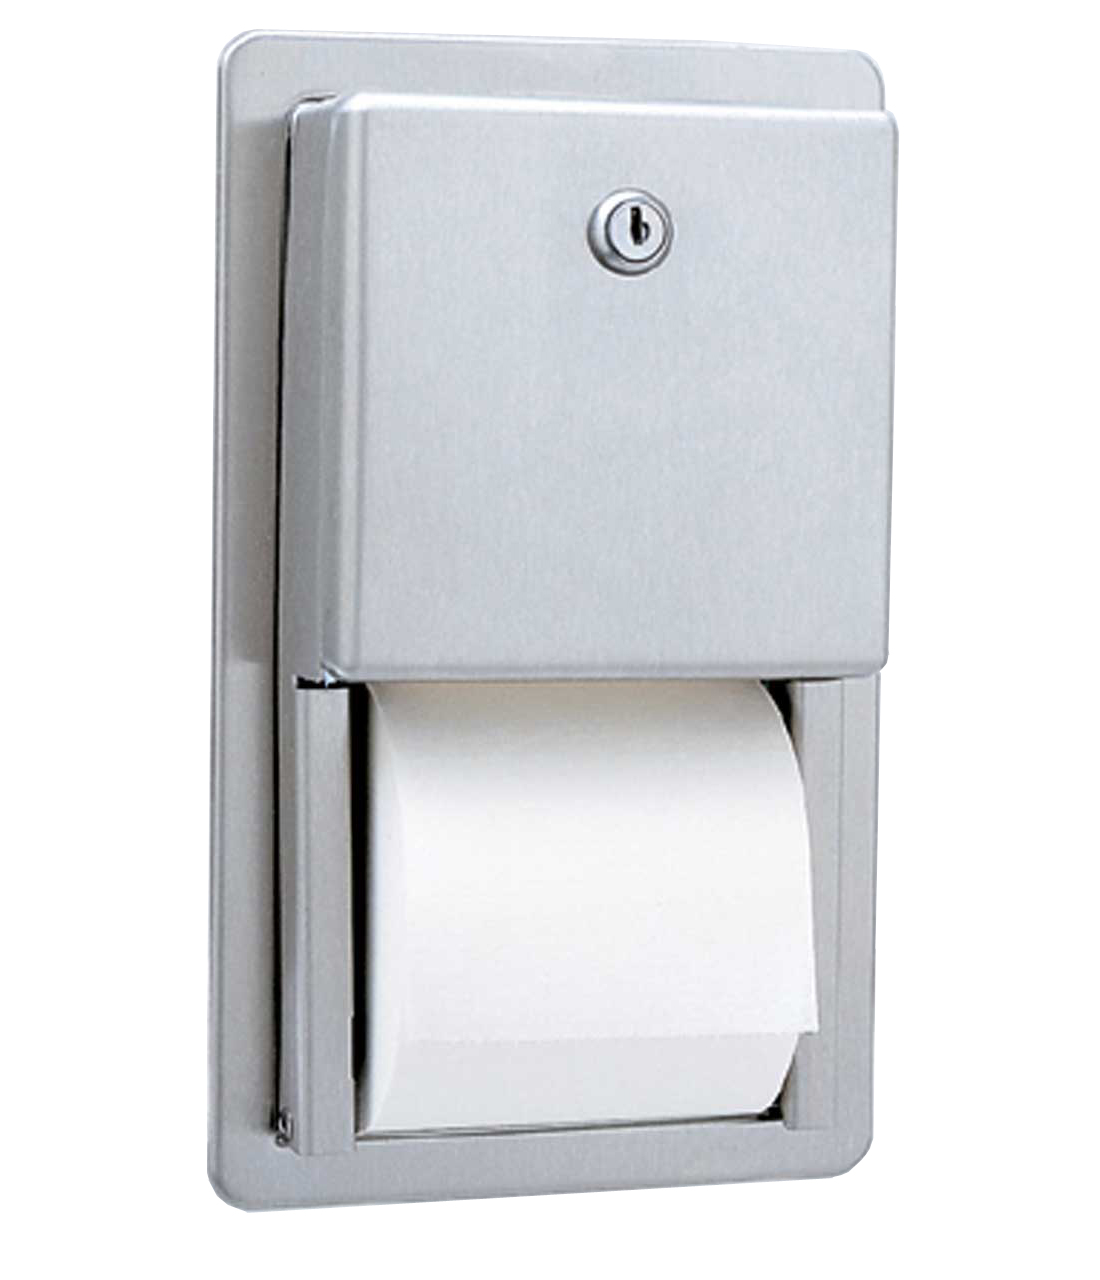 Recessed Multi-Roll Toilet Tissue Dispenser Image